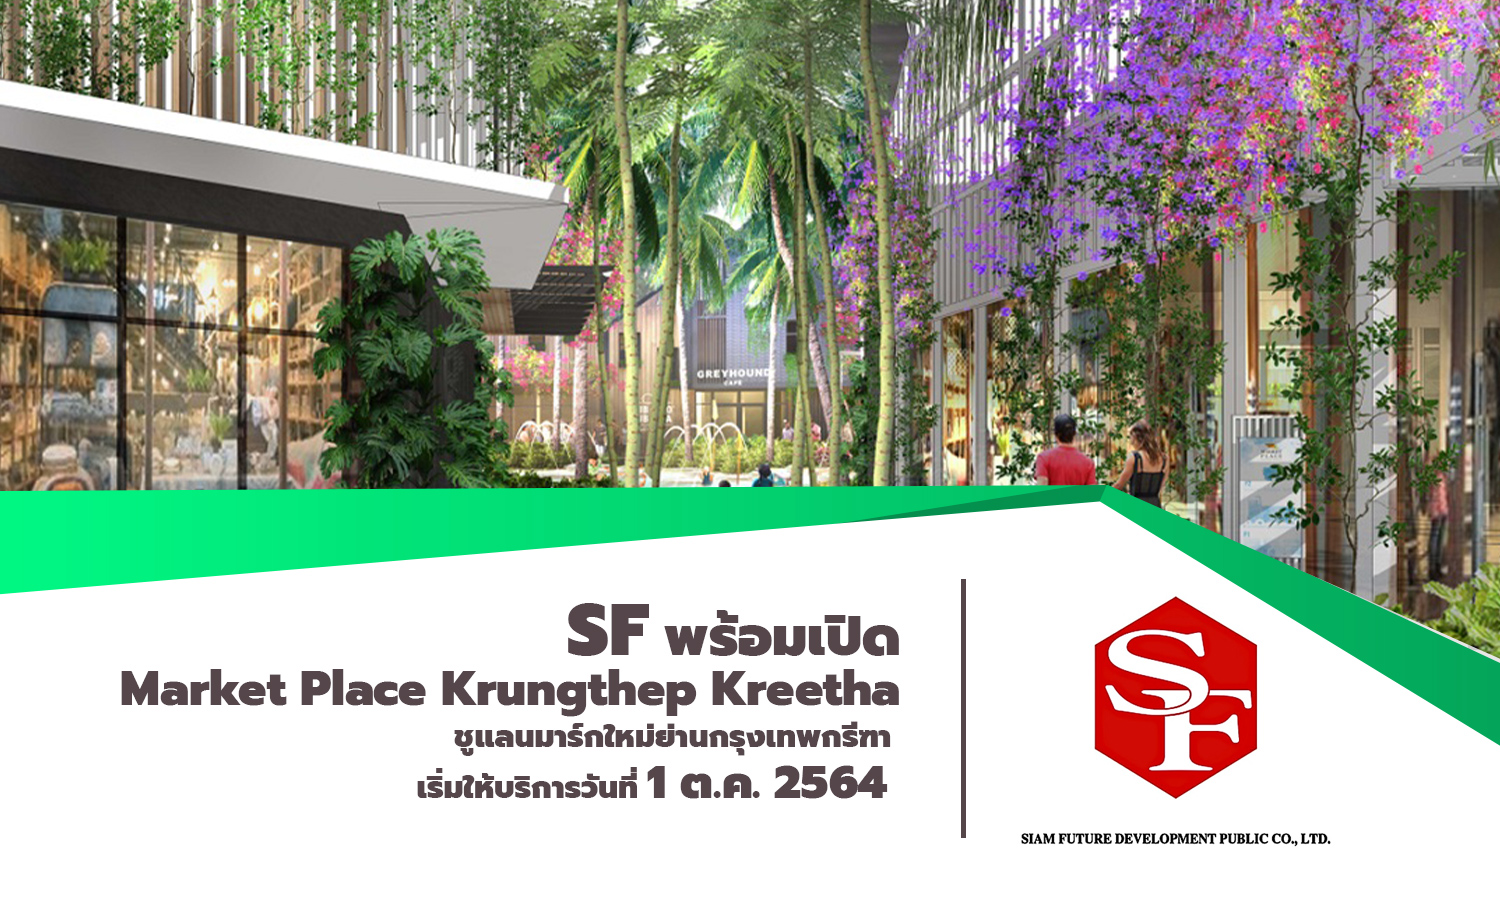 SF พร้อมเปิด Market Place Krungthep Kreetha ชูแลนมาร์กใหม่ย่านกรุงเทพกรีฑา  เริ่มให้บริการวันที่ 1 ต.ค. 2564 